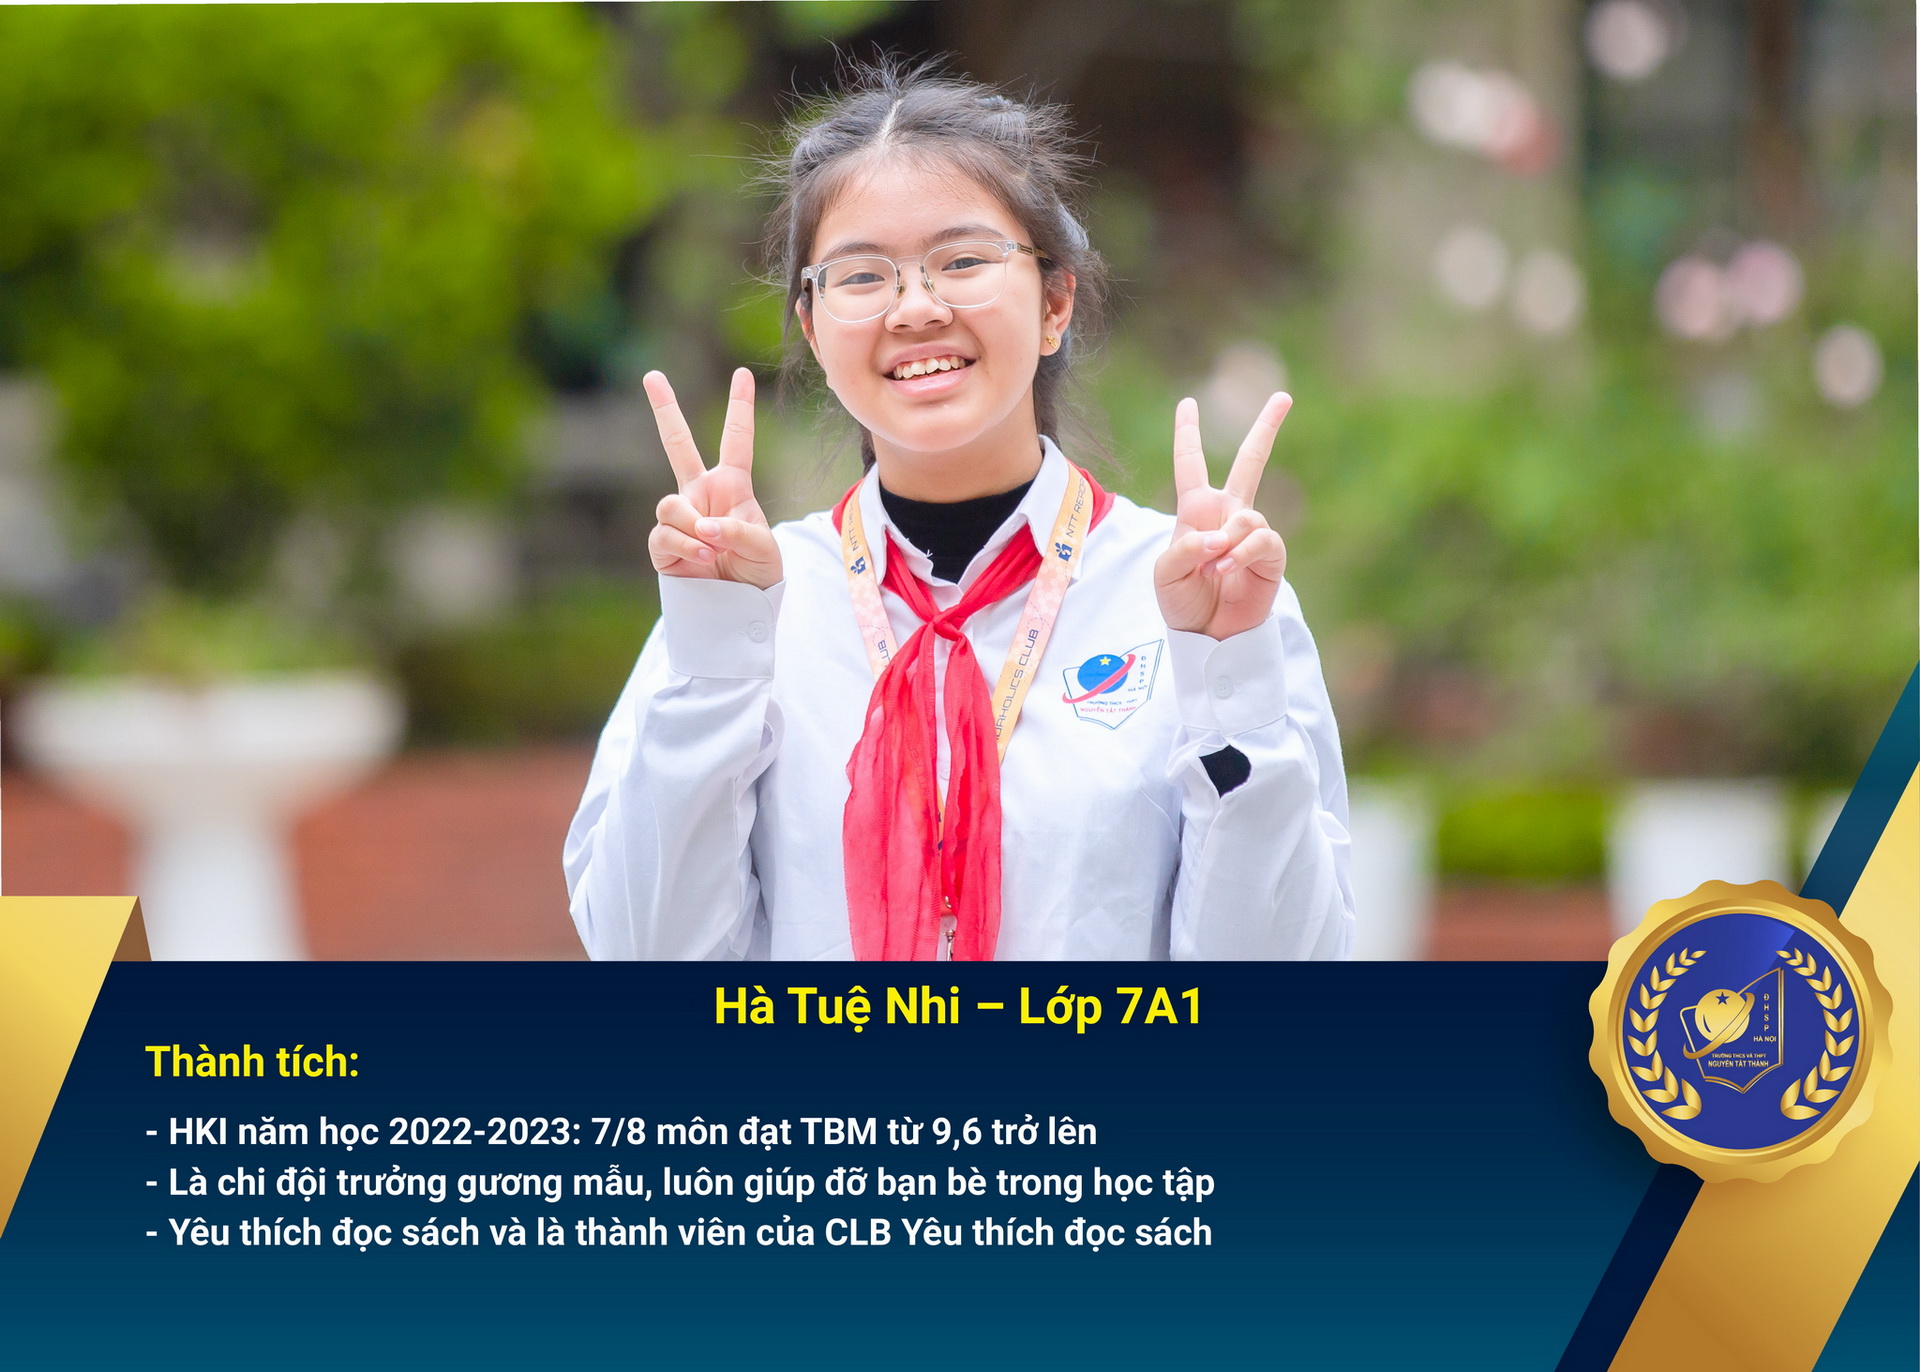 Chân dung học sinh nhận Học bổng Nguyễn Tất Thành lần thứ 45 – Khối 7 - năm học 2022 – 2023